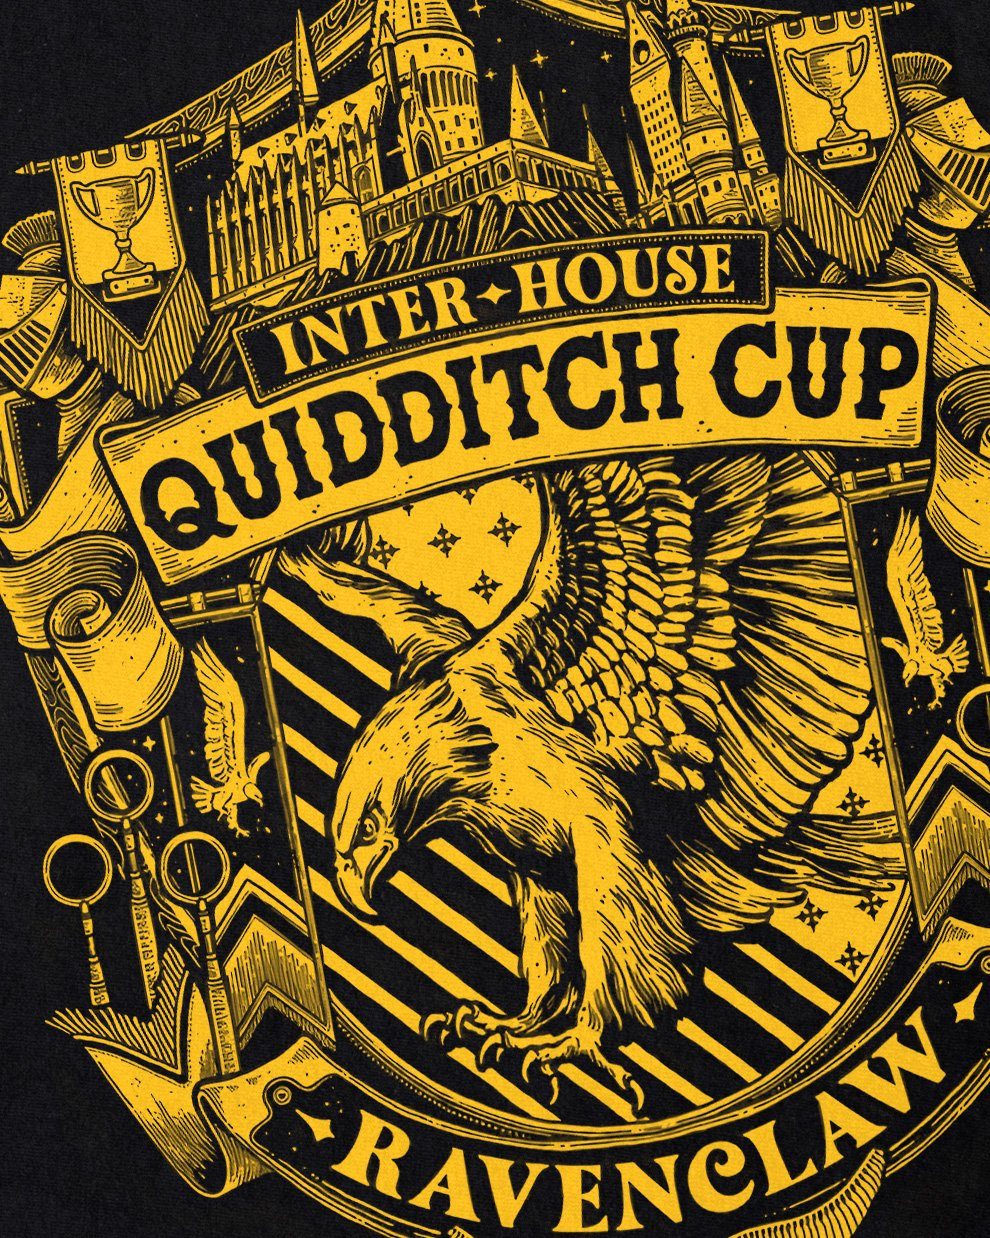 Klugen hogwarts Print-Shirt harry hufflepuff style3 ravenclaw Herren T-Shirt der gryffindor Cup legacy potter slytherin